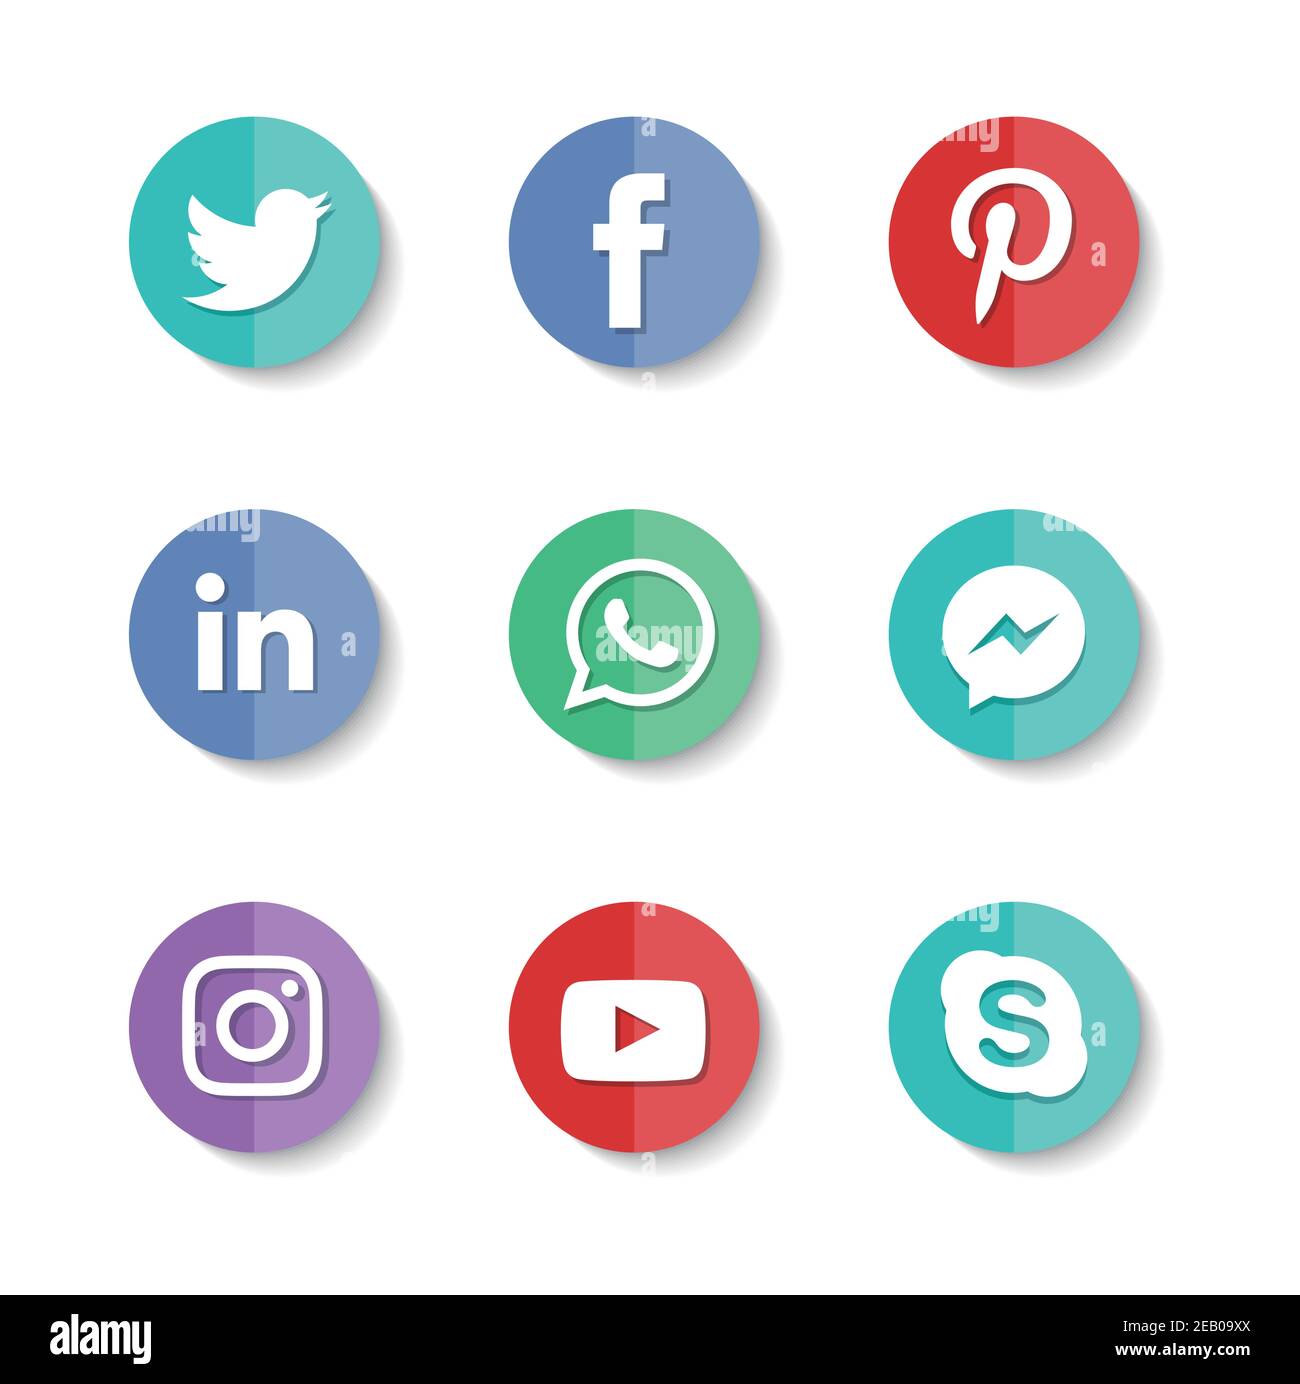 Set of popular social media icons. Instagram, Facebook, Twitter, Youtube, WhatsApp, LinkedIn, Pinterest Skype and Messenger icons. Stock Vector